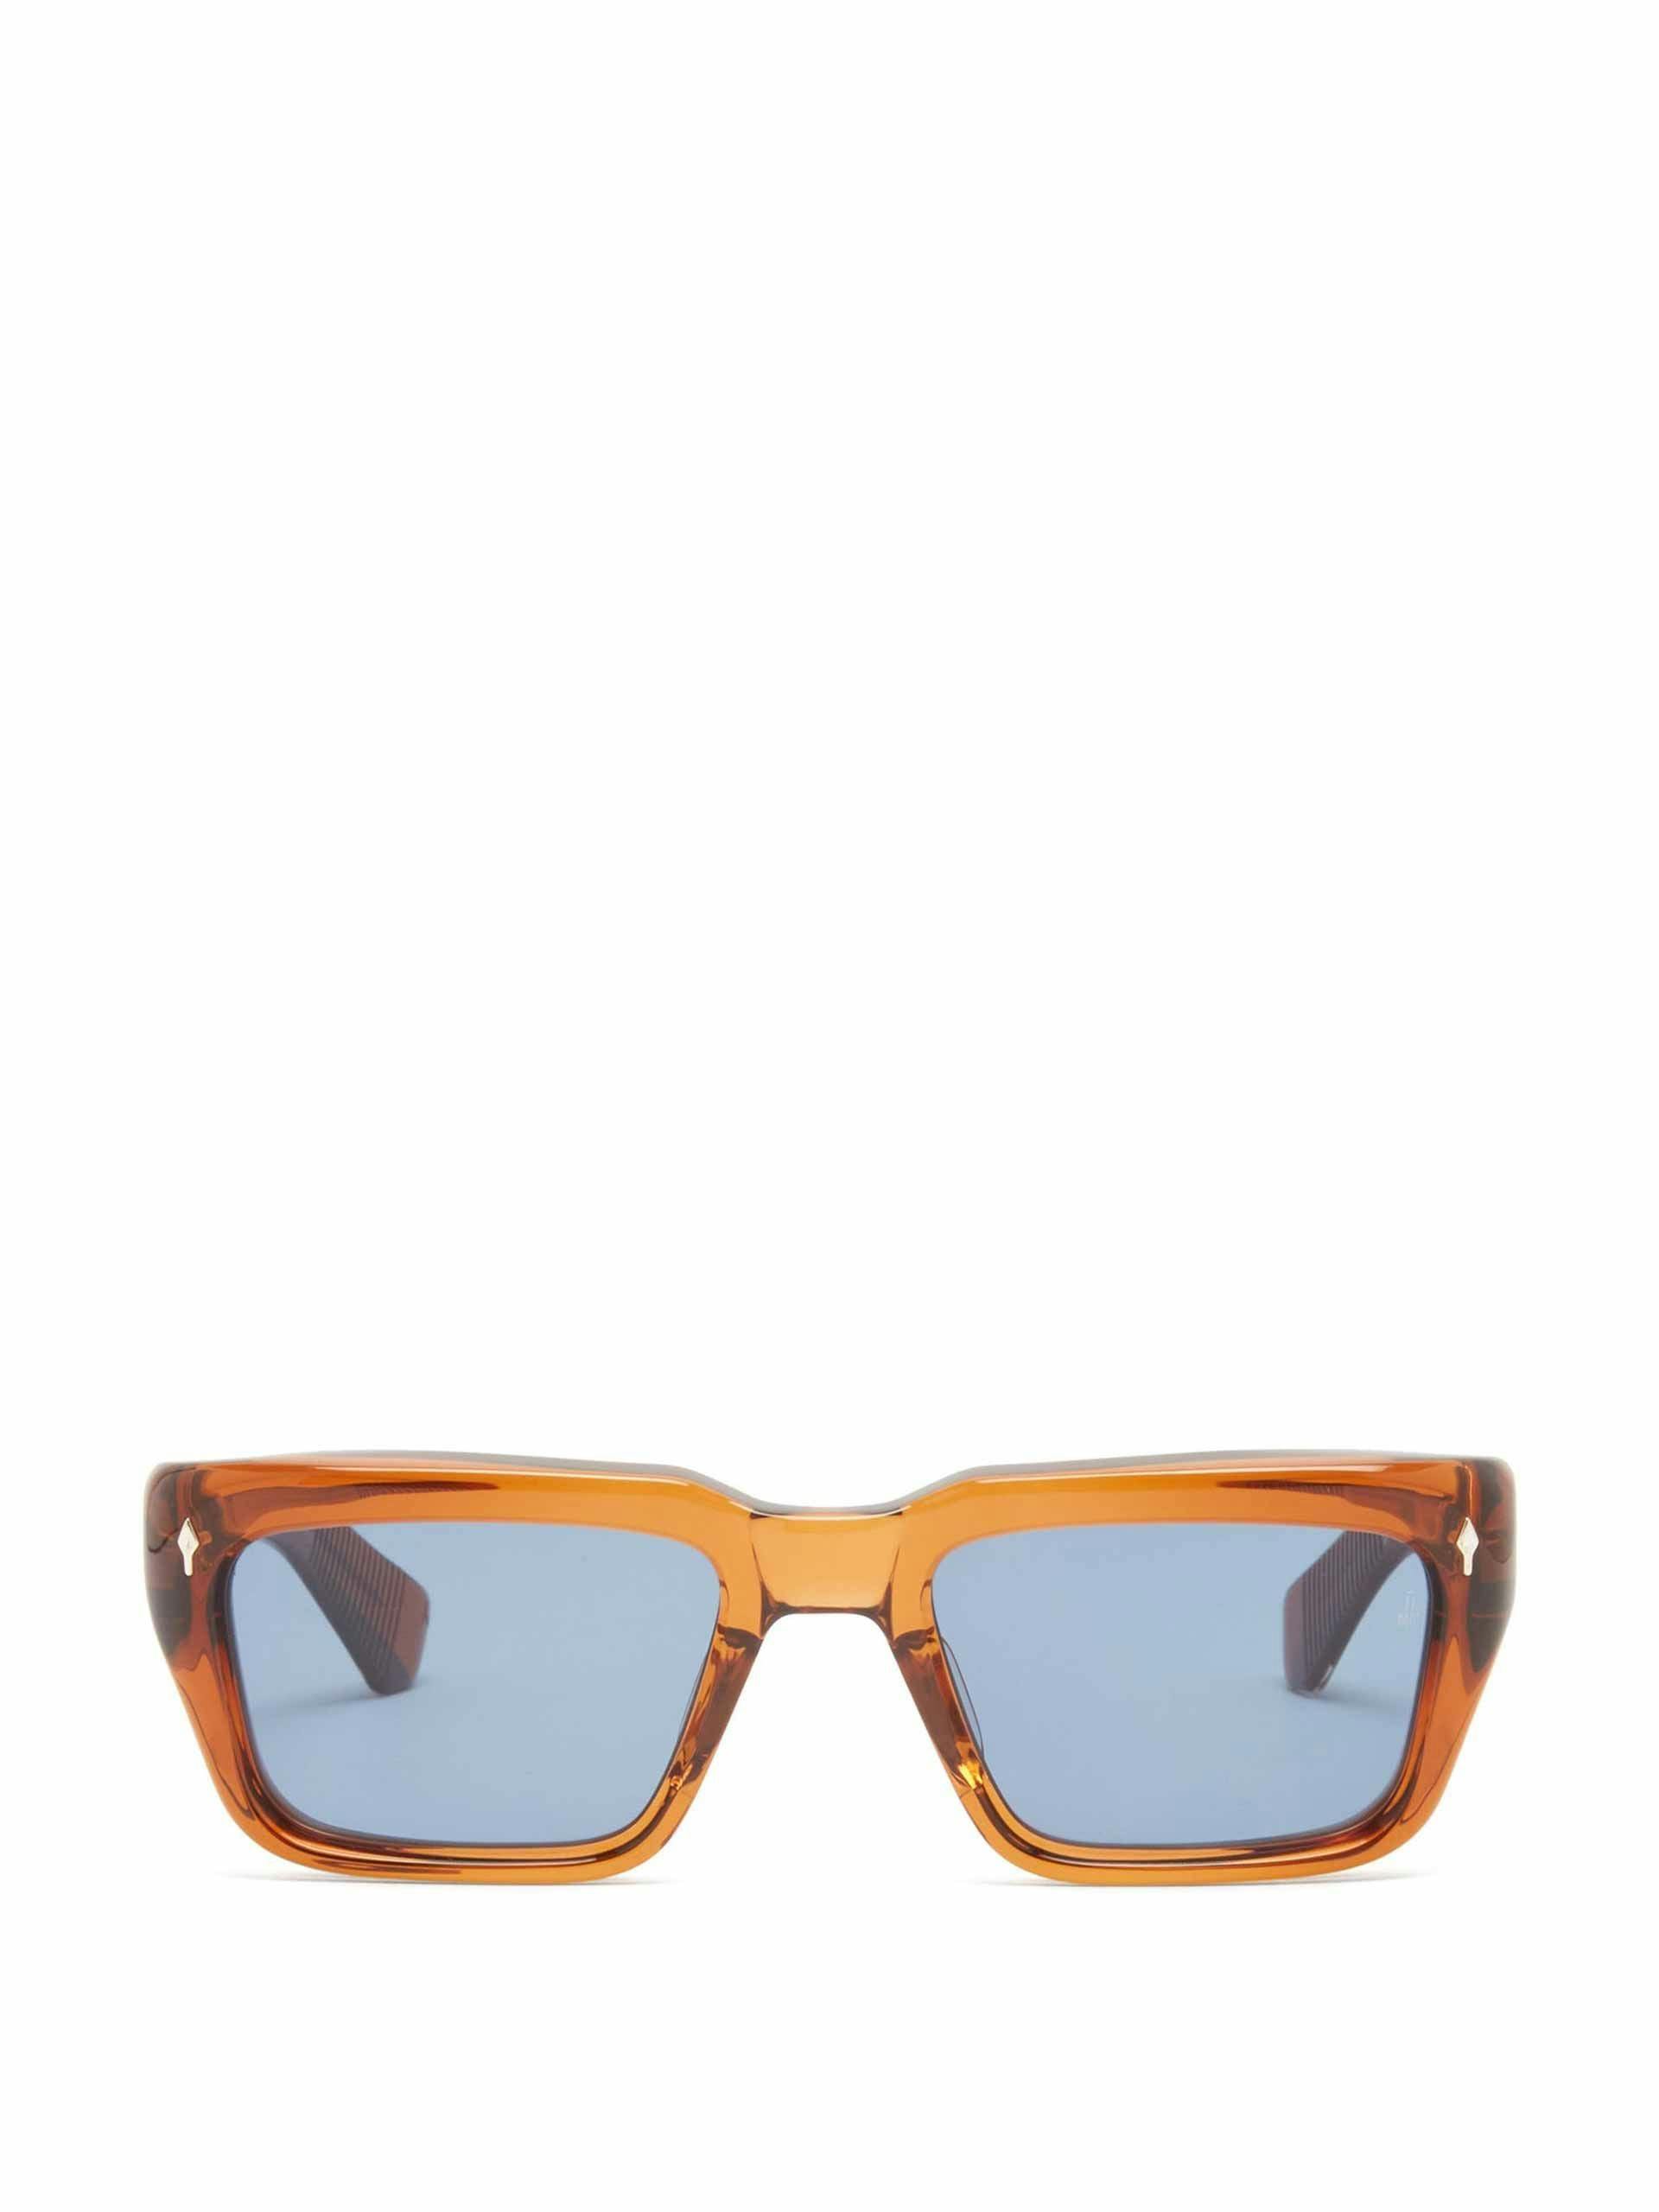 Brown square acetate sunglasses